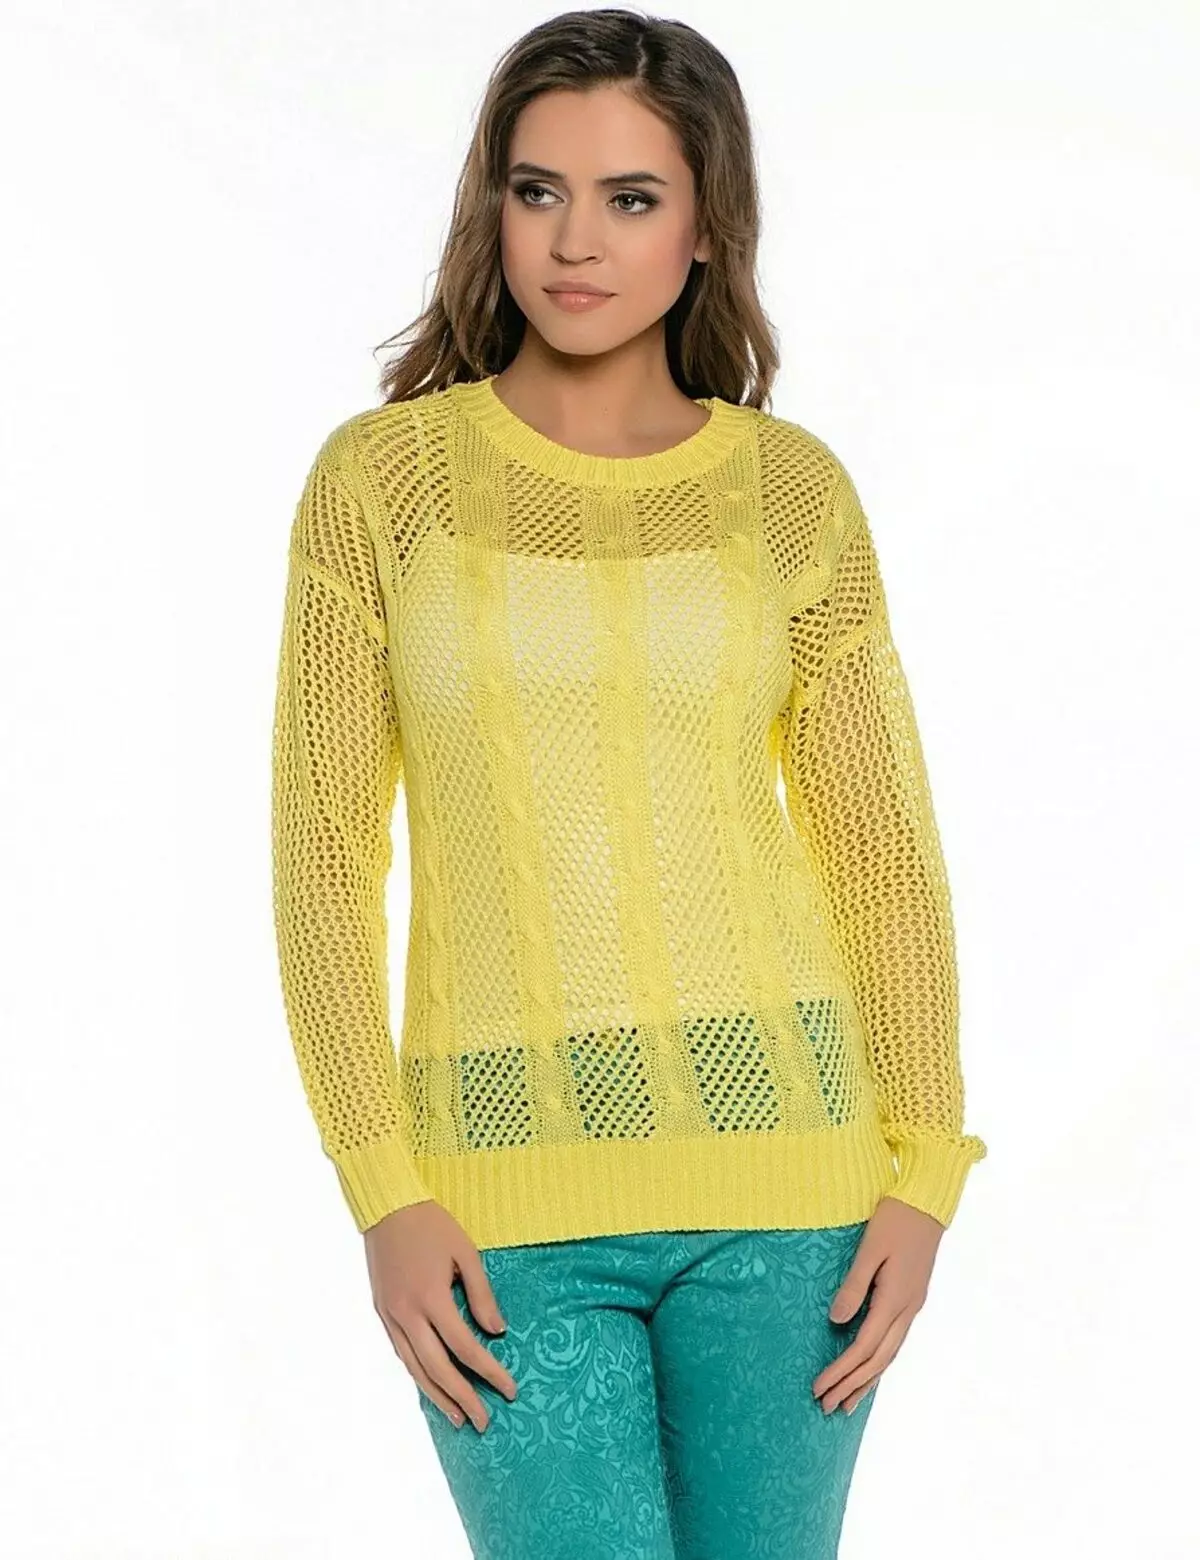 Co nosić żółty sweter (78 zdjęć) 1050_44